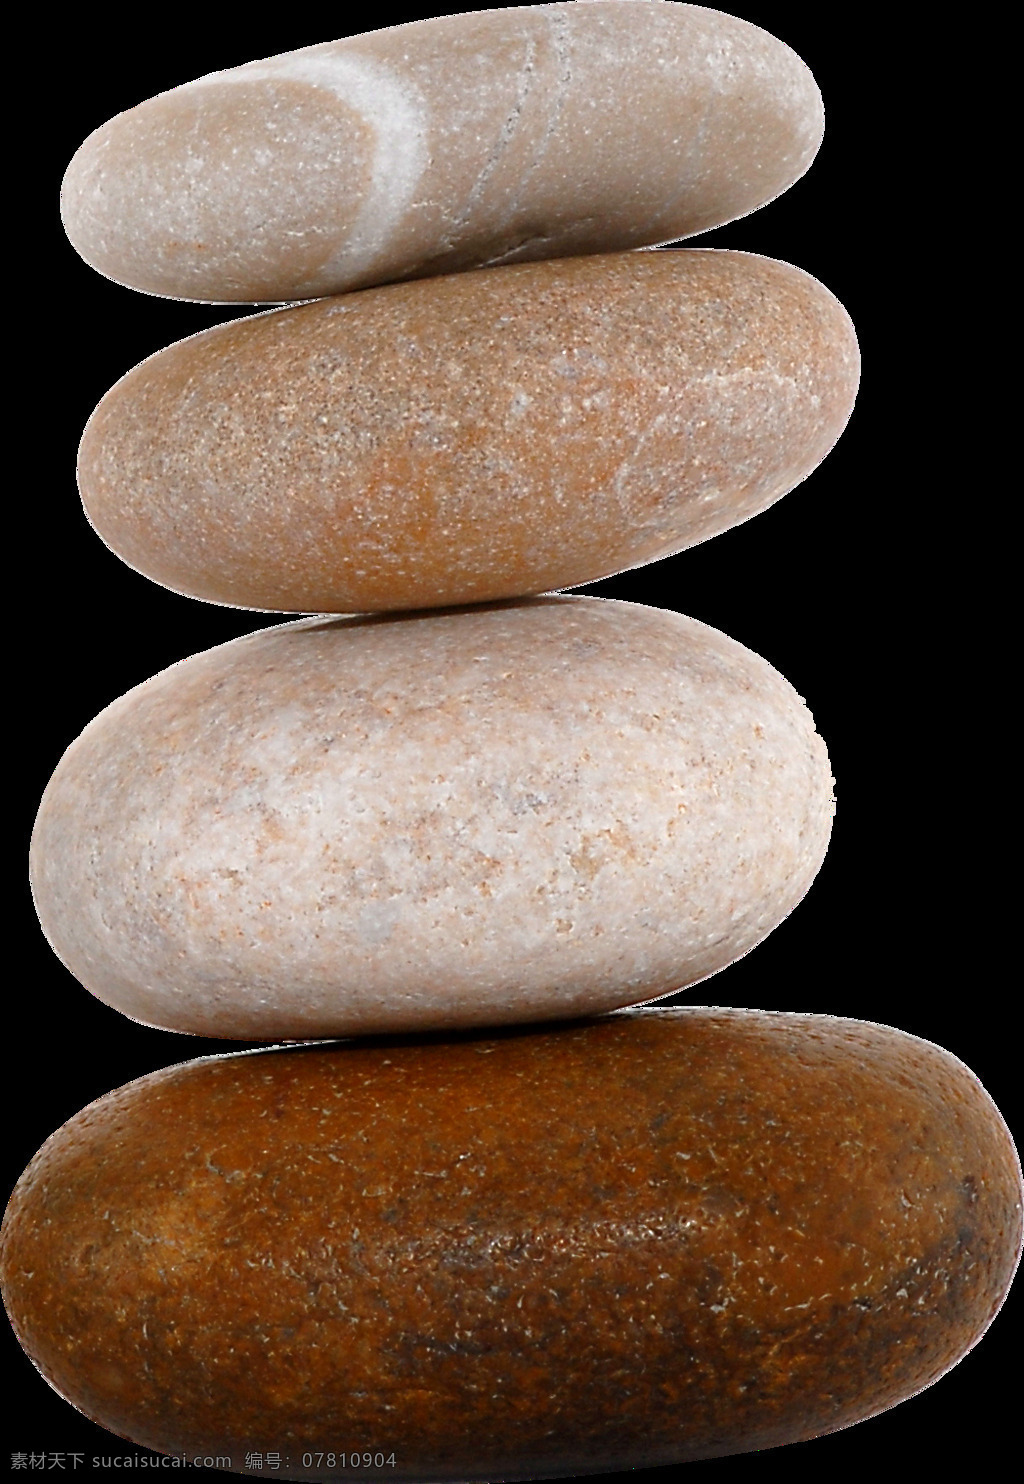 四 块 石头 免 抠 透明 图 层 鹅卵石 石头素材 彩色石头素材 彩石 黑石头 养生石 按摩石 石头图片 鹅卵石石头 彩色鹅卵石 彩色石头 大石头素材 岩石